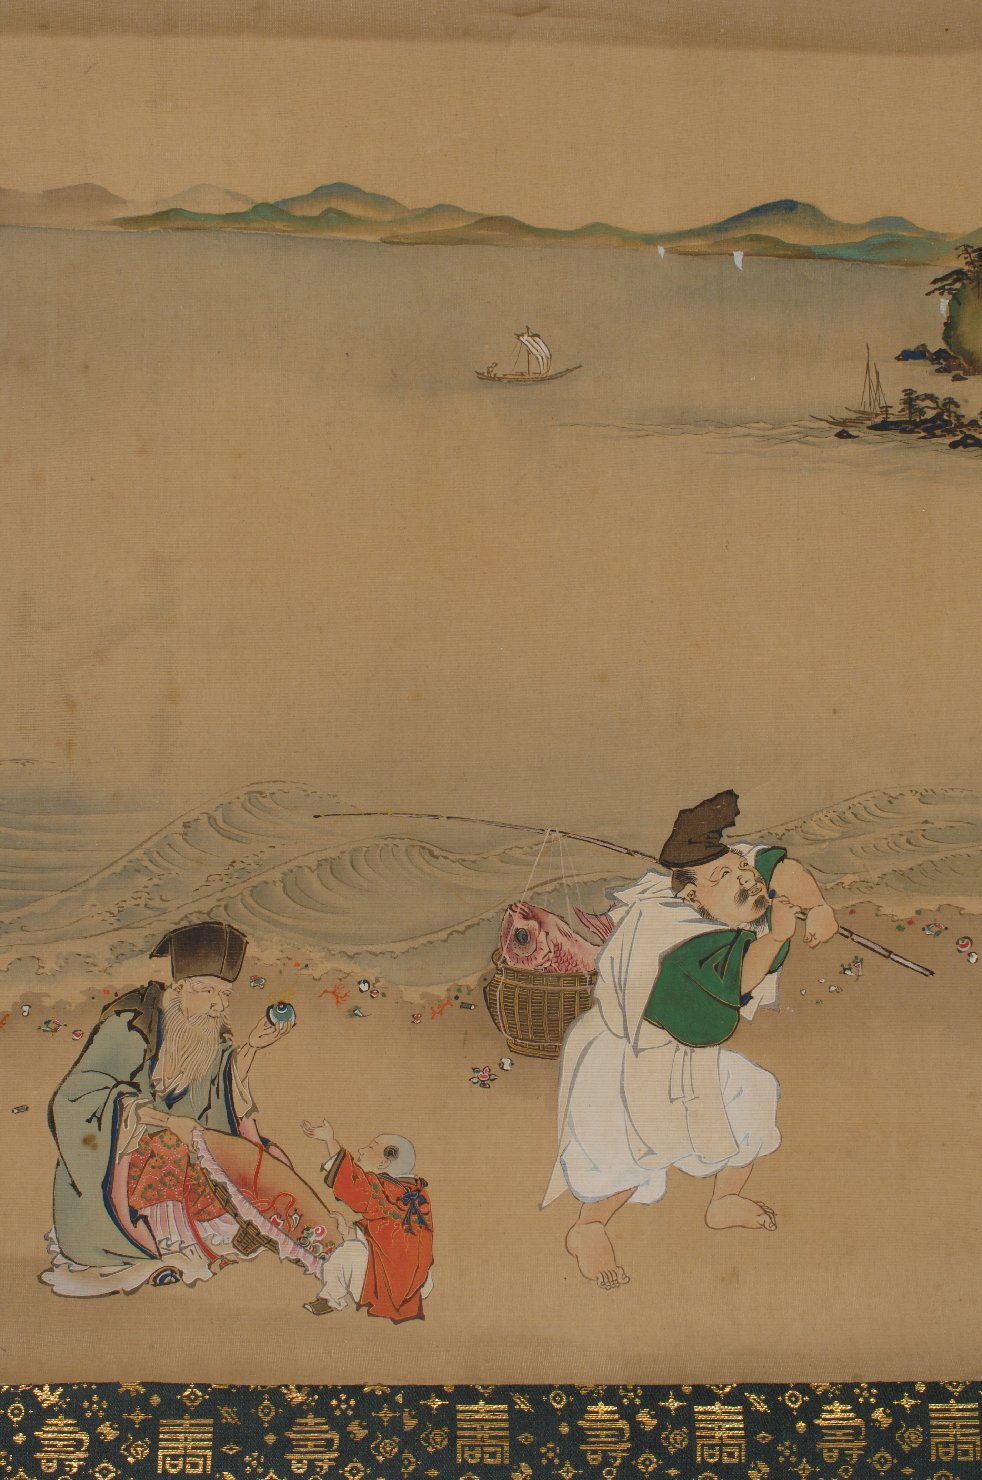 Le Sette Divinità della Fortuna sulla spiaggia nella baia di Sagami, Le Sette Divinità della Fortuna (dipinto) di Hokuba (prima metà sec. XIX)